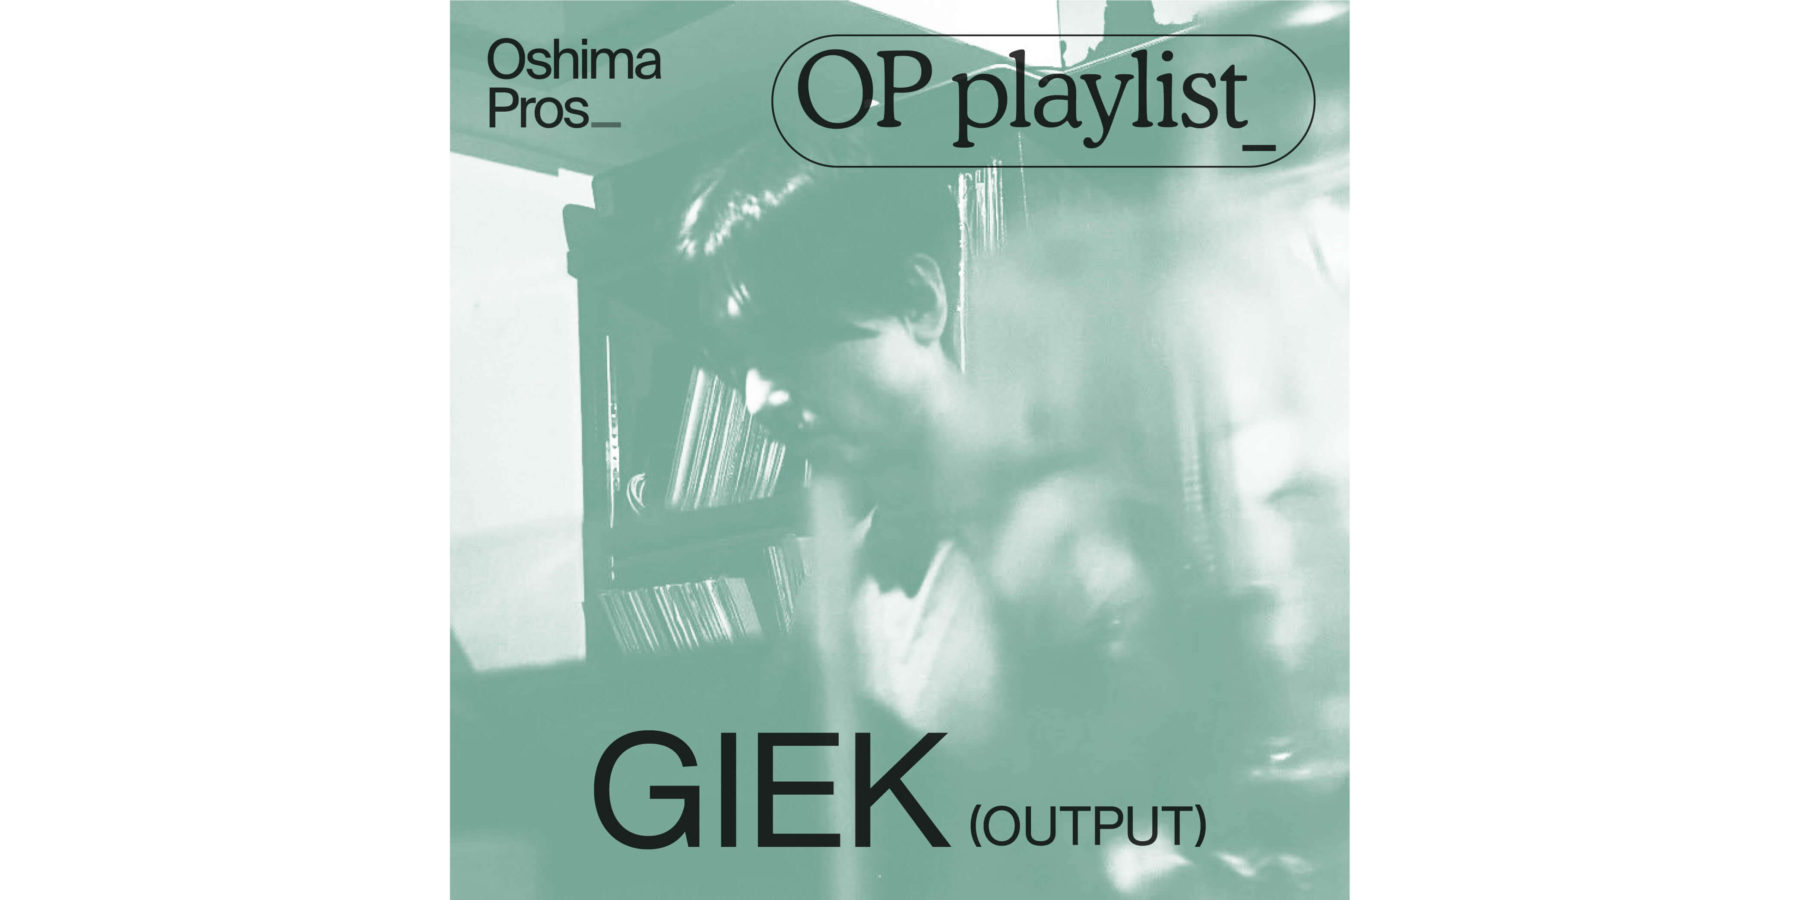 OP_pl_1130_giek-output-yokonaga